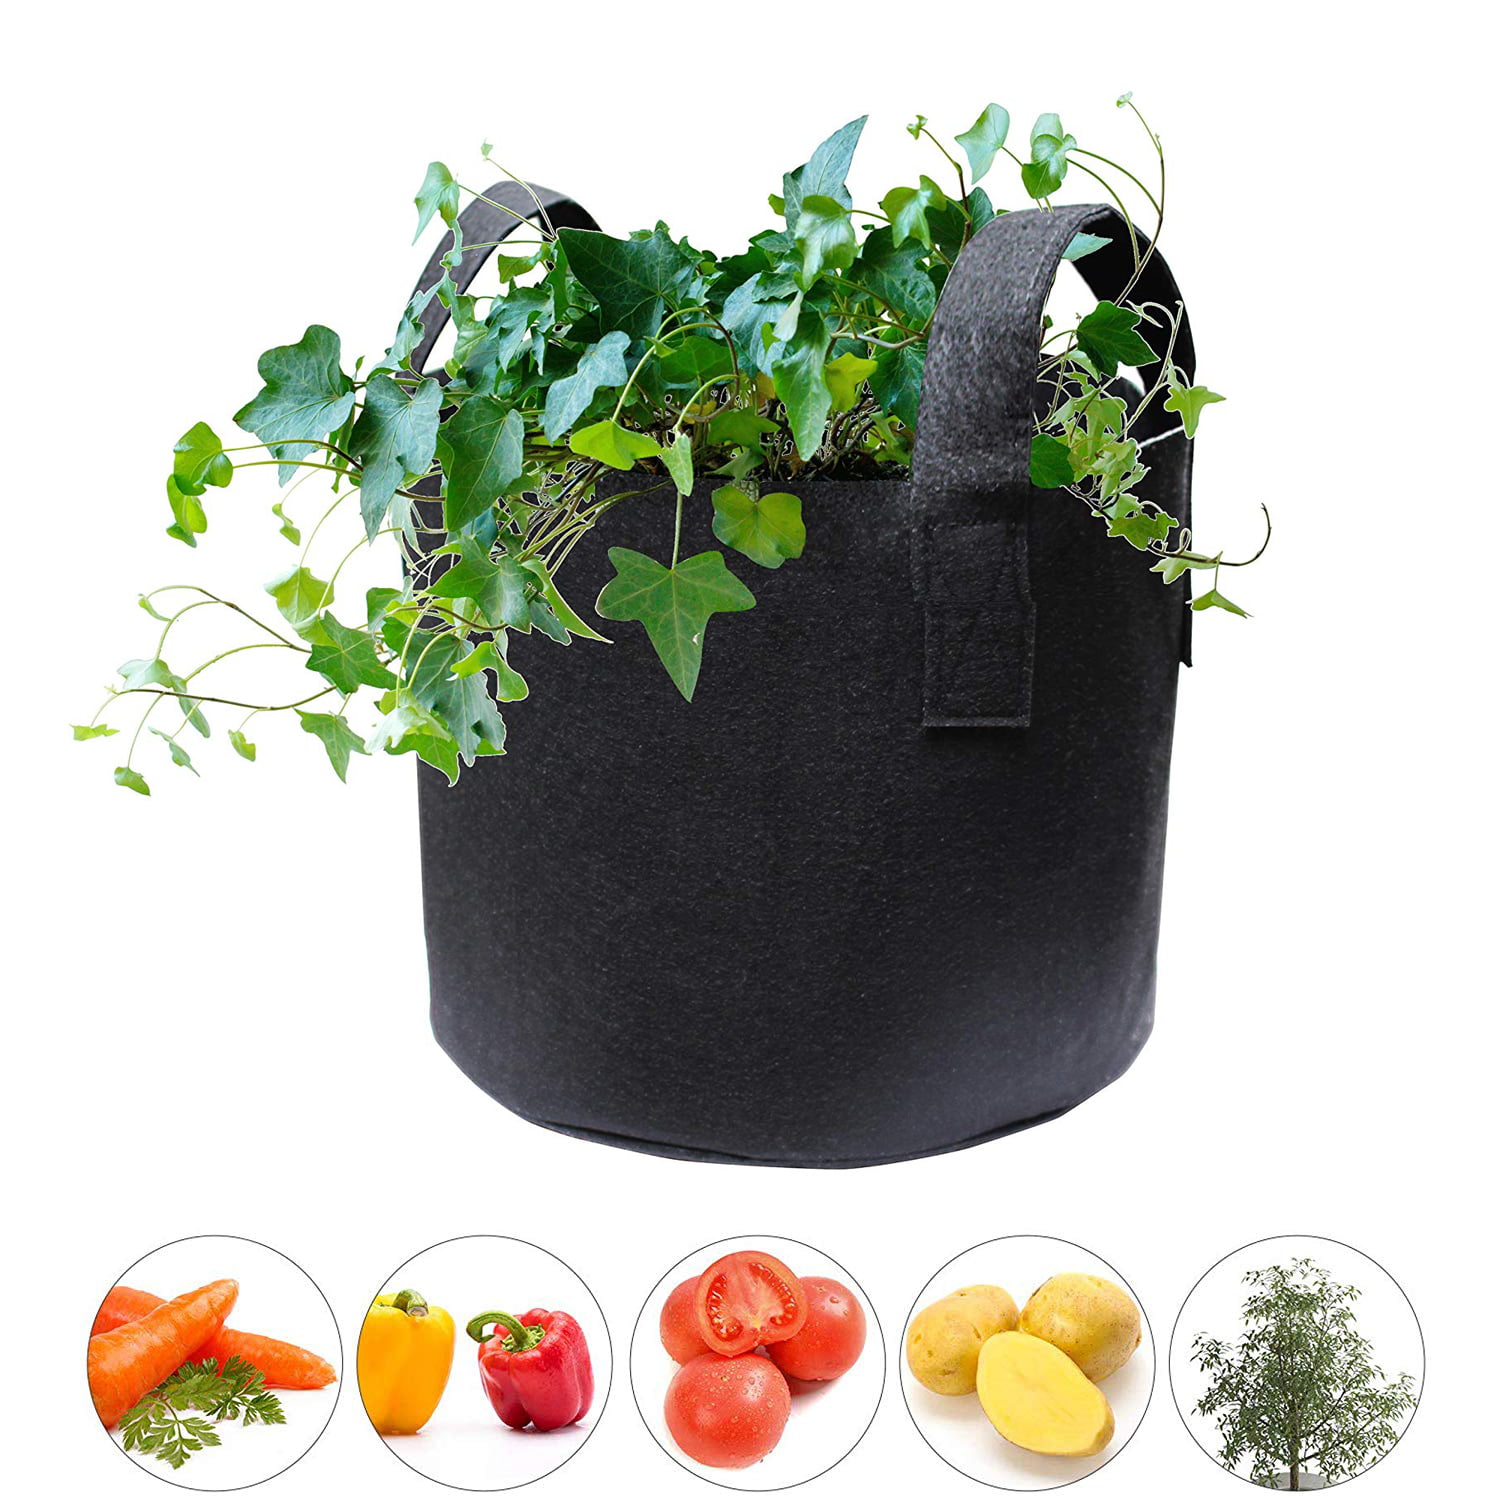 5 Pcs Grow Bags Plant Bag Home Garden Vegetable Planter Container Pot W/handle 